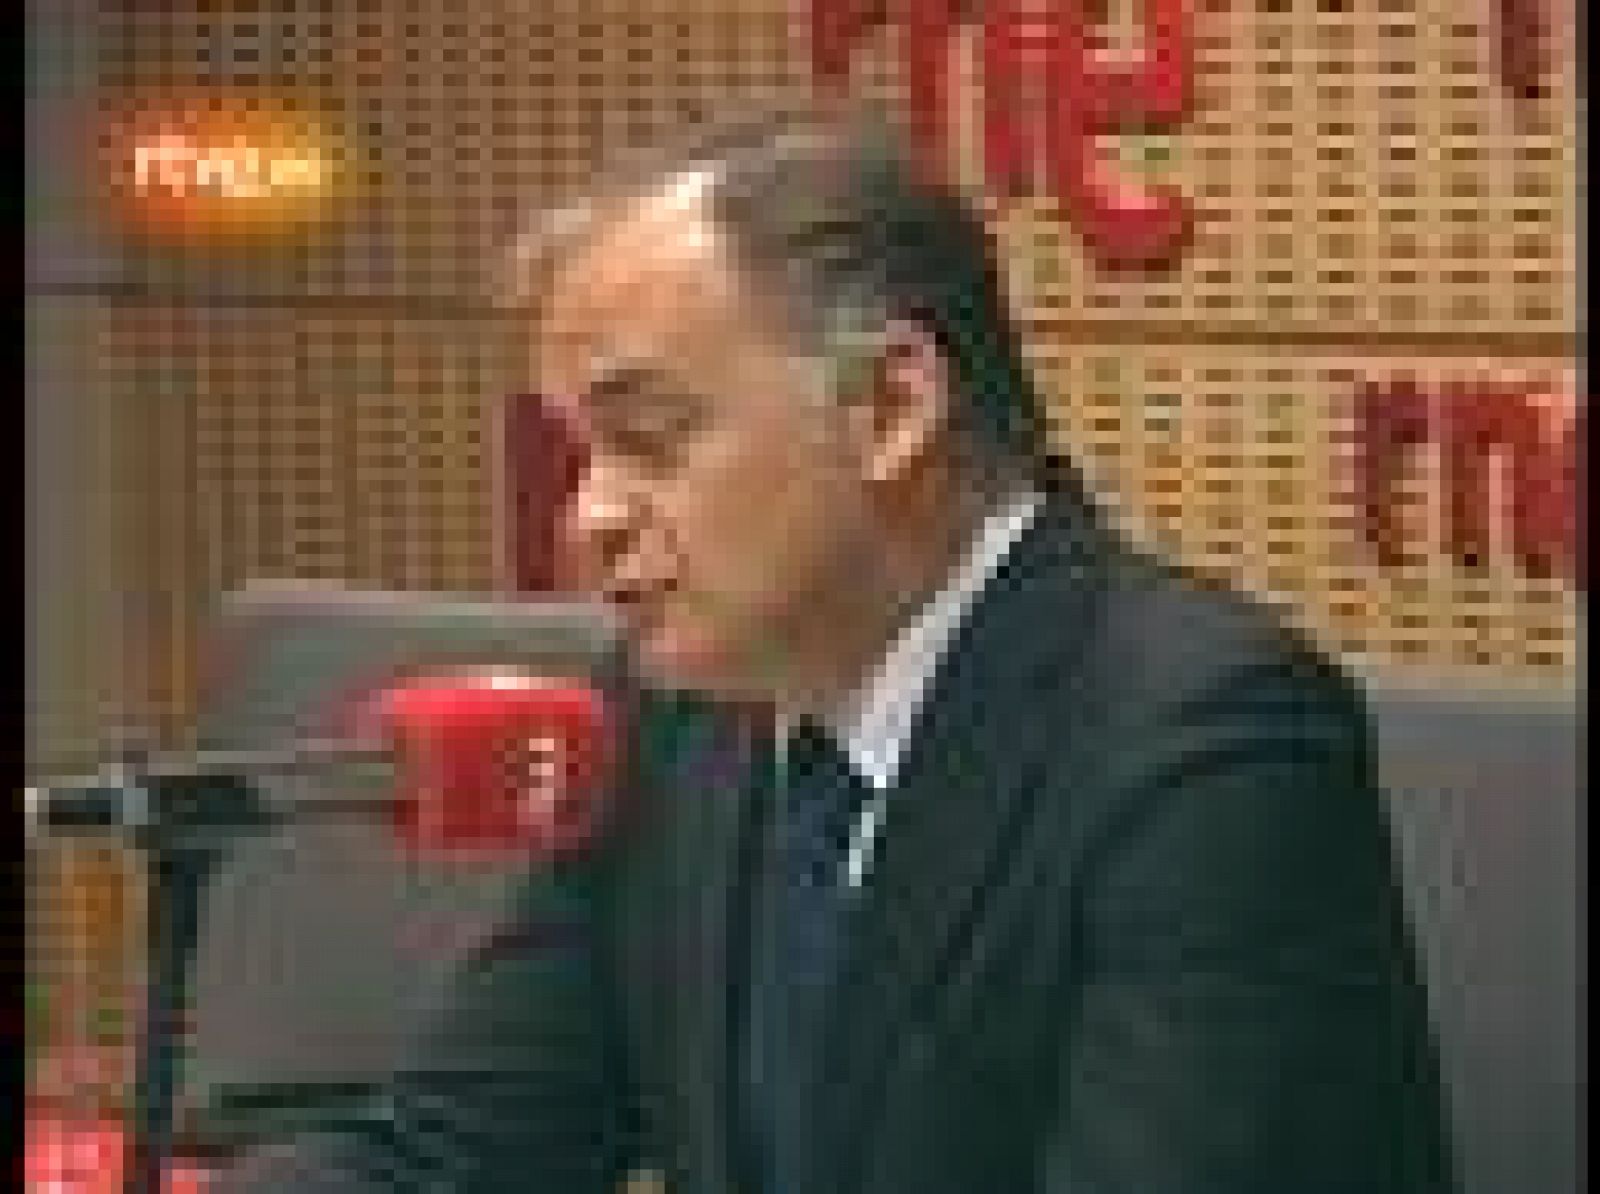 El vicesecretario de comunicación del PP, Esteban González Pons, es entrevistado en Radio Nacional (25/06/09).